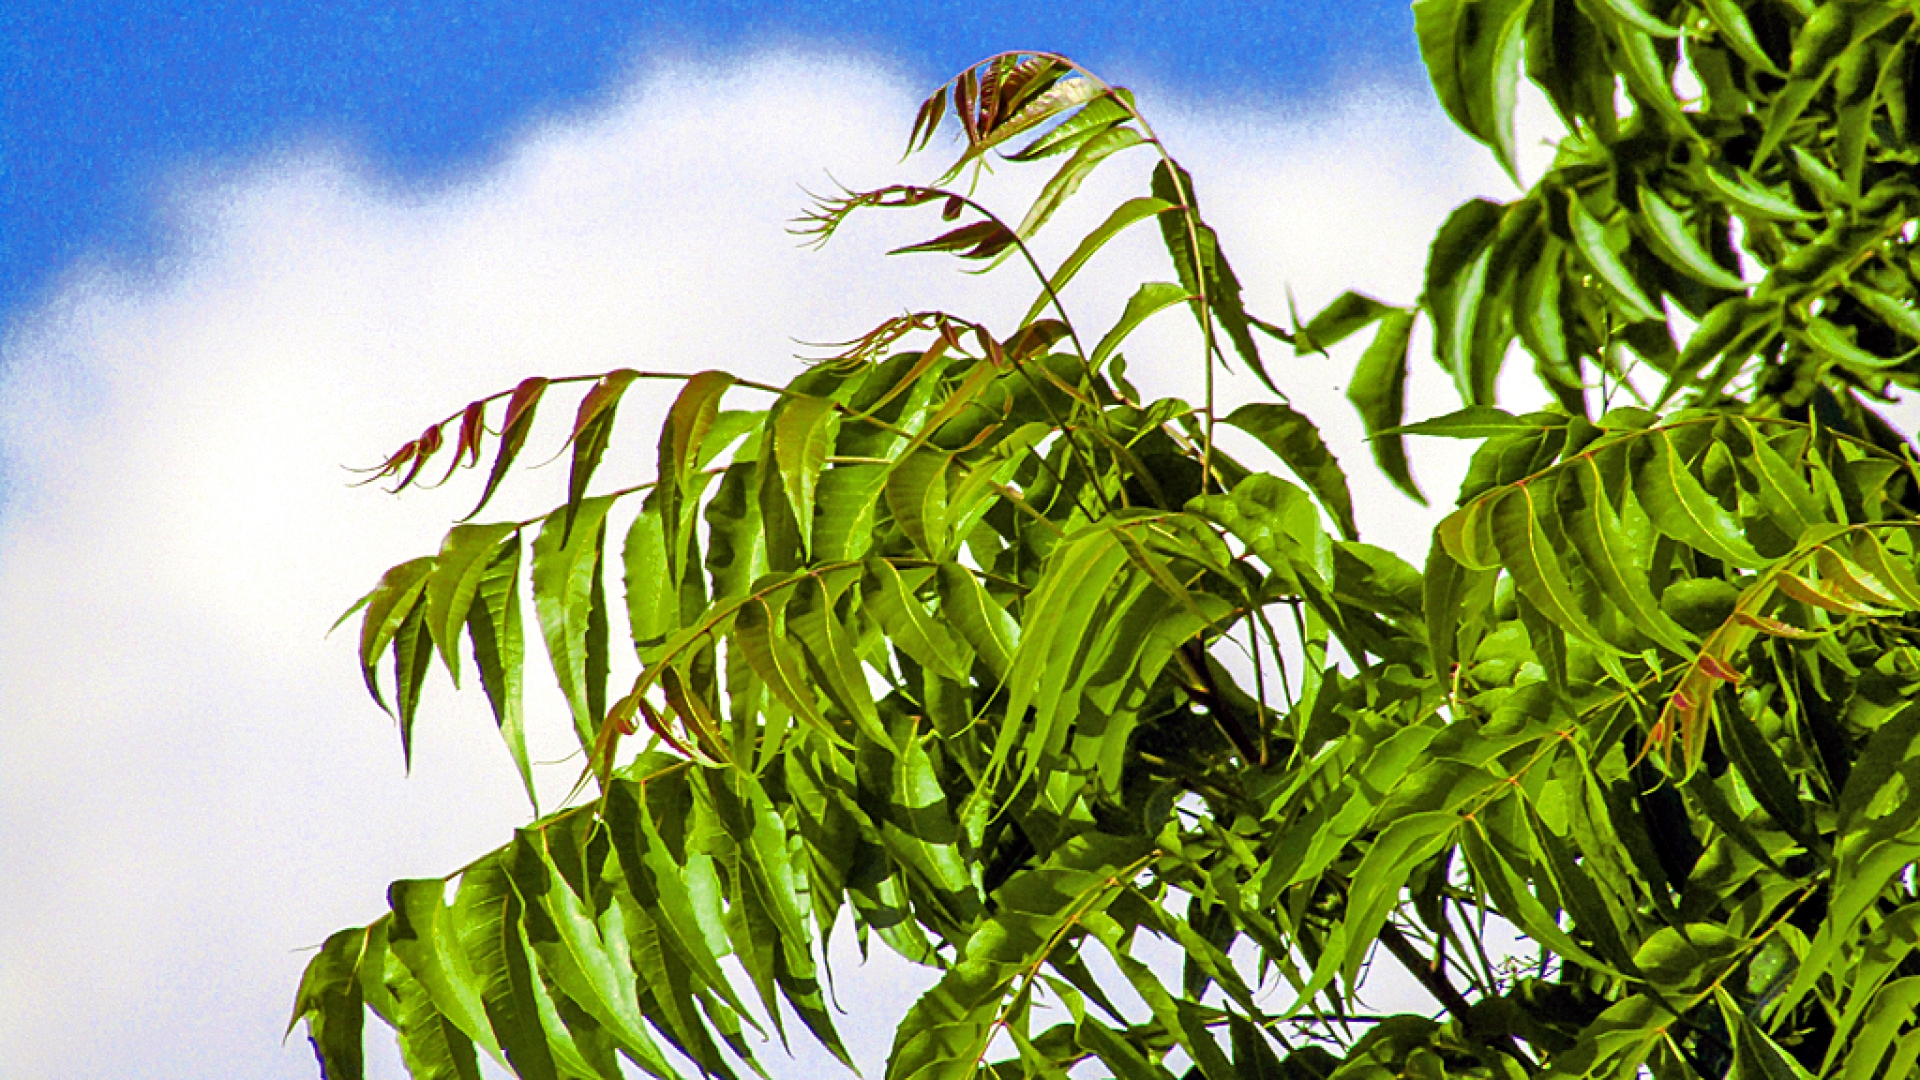 Le neem, l’arbre qui guérit tous les maux